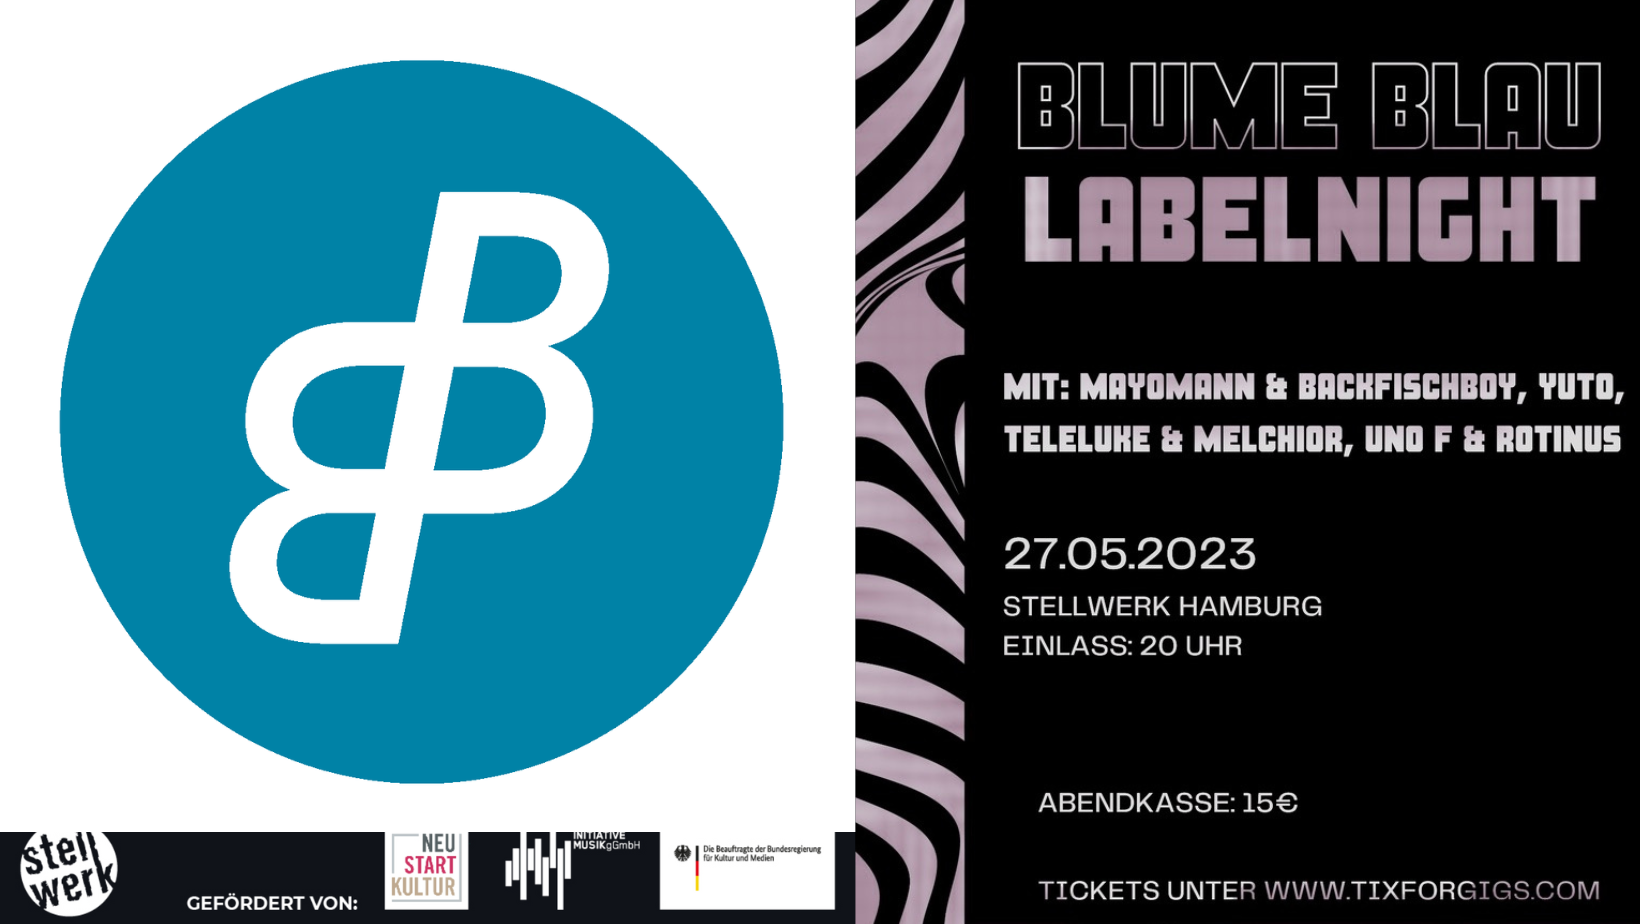 Blumeblau Beatentourage präsentiert: Die BLUMEBLAU LABELNIGHT: Mit Mayomann & Backfischboy, Yuto, Teleluke & Melchior, Uno F & Rotinus